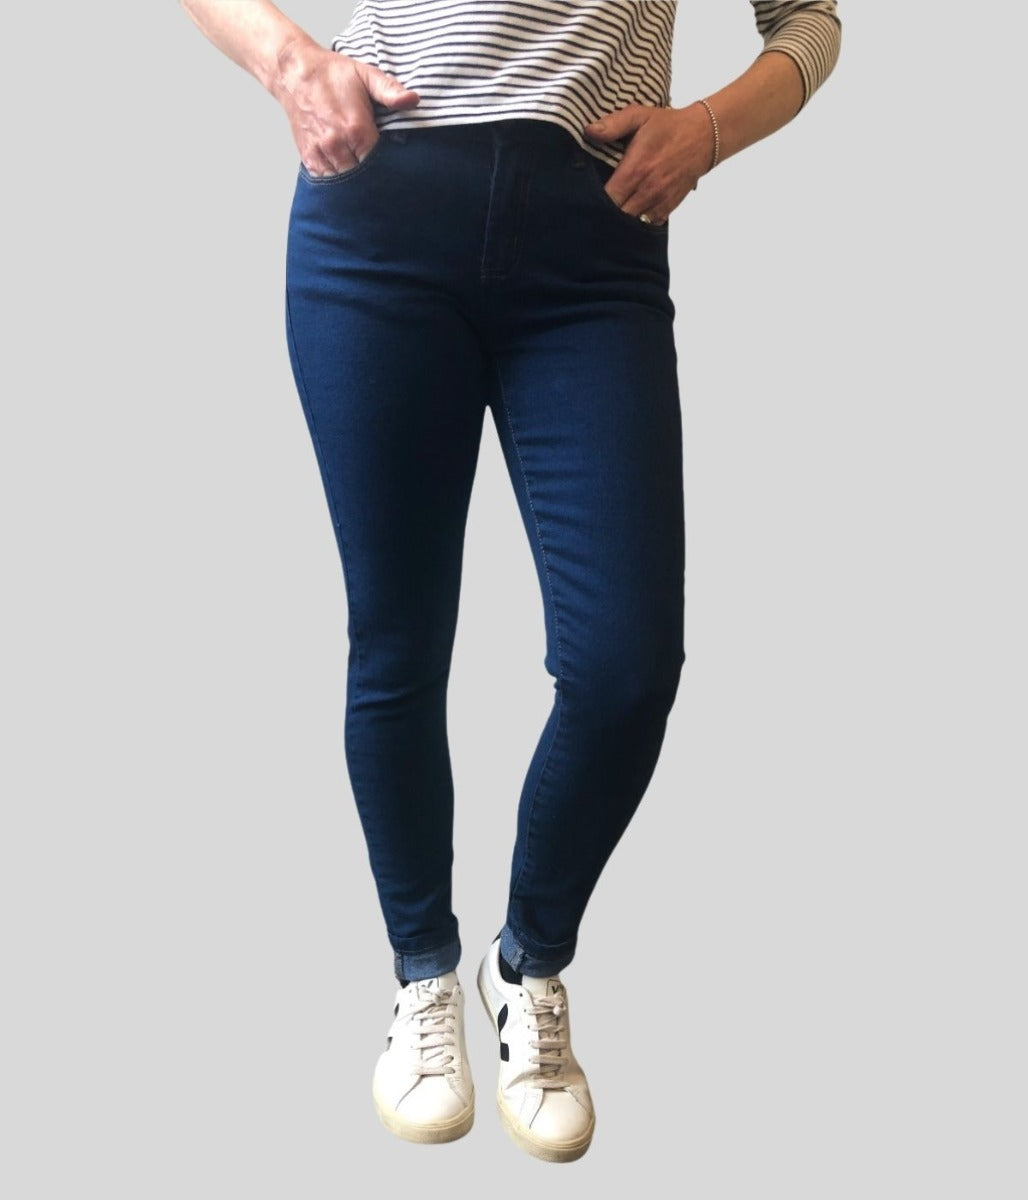 Blue Denim Skinny Jeans Size 6  Size 6